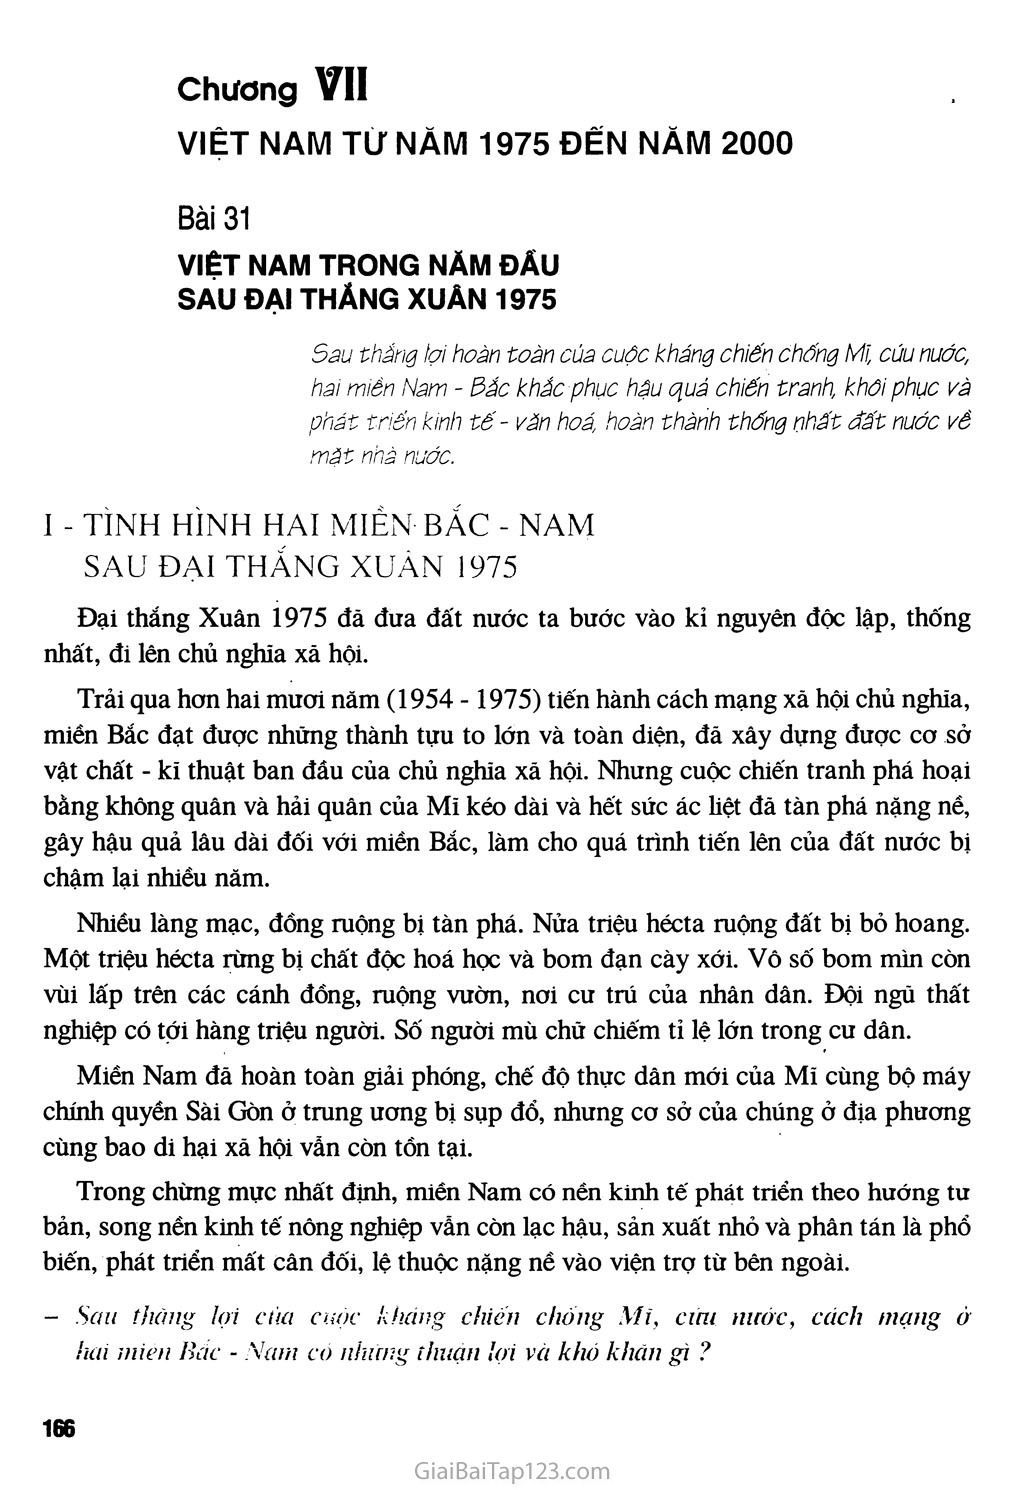 Bài 31 - Việt Nam trong năm đầu sau đại thắng Xuân 1975 trang 1